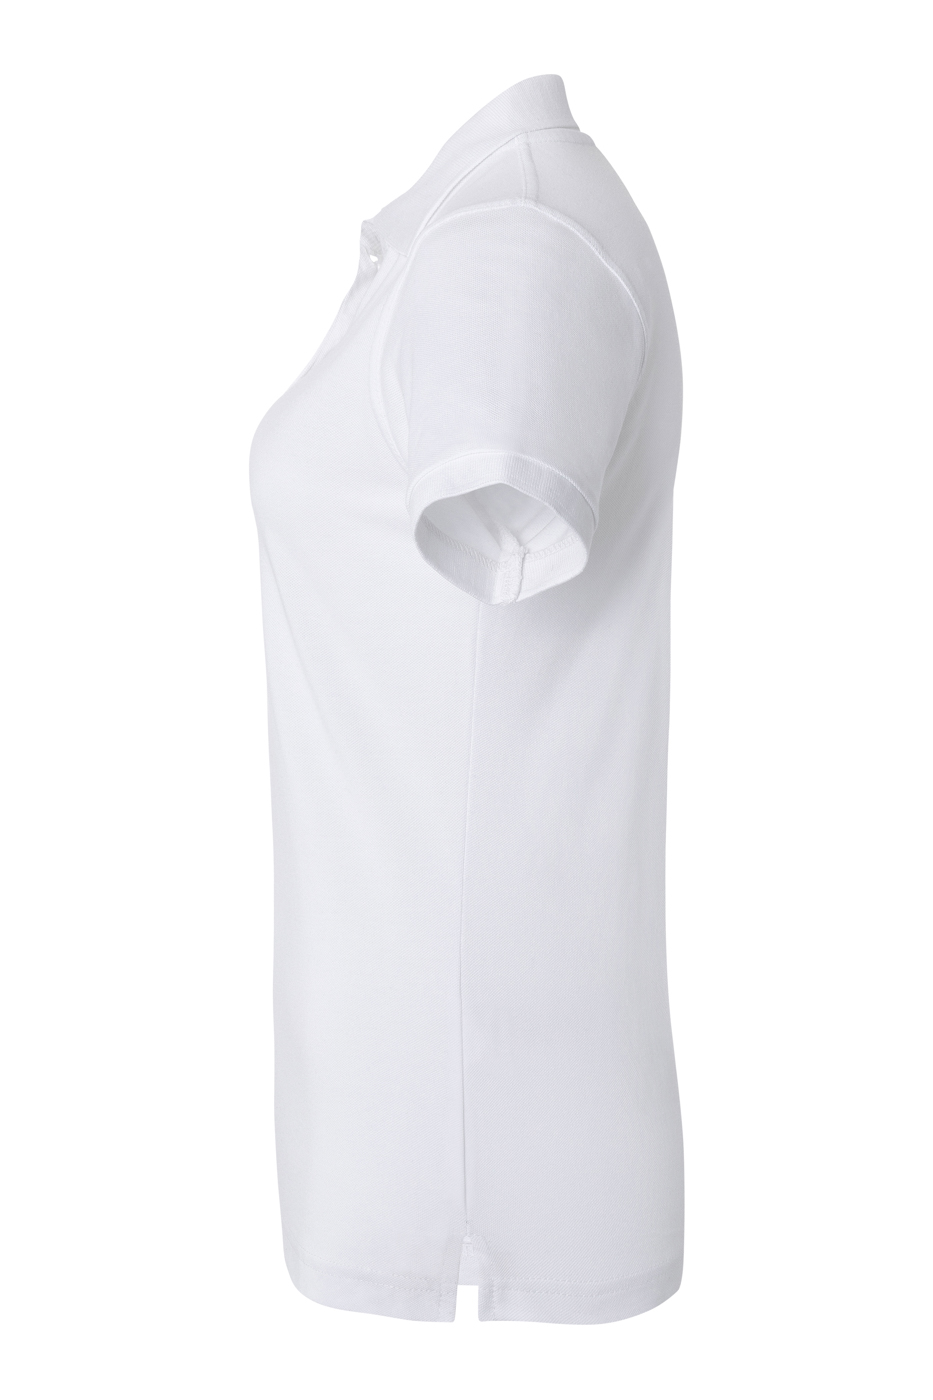 Damen Workwear Poloshirt Basic , GR. 3XL , Farbe: weiß , von Karlowsky